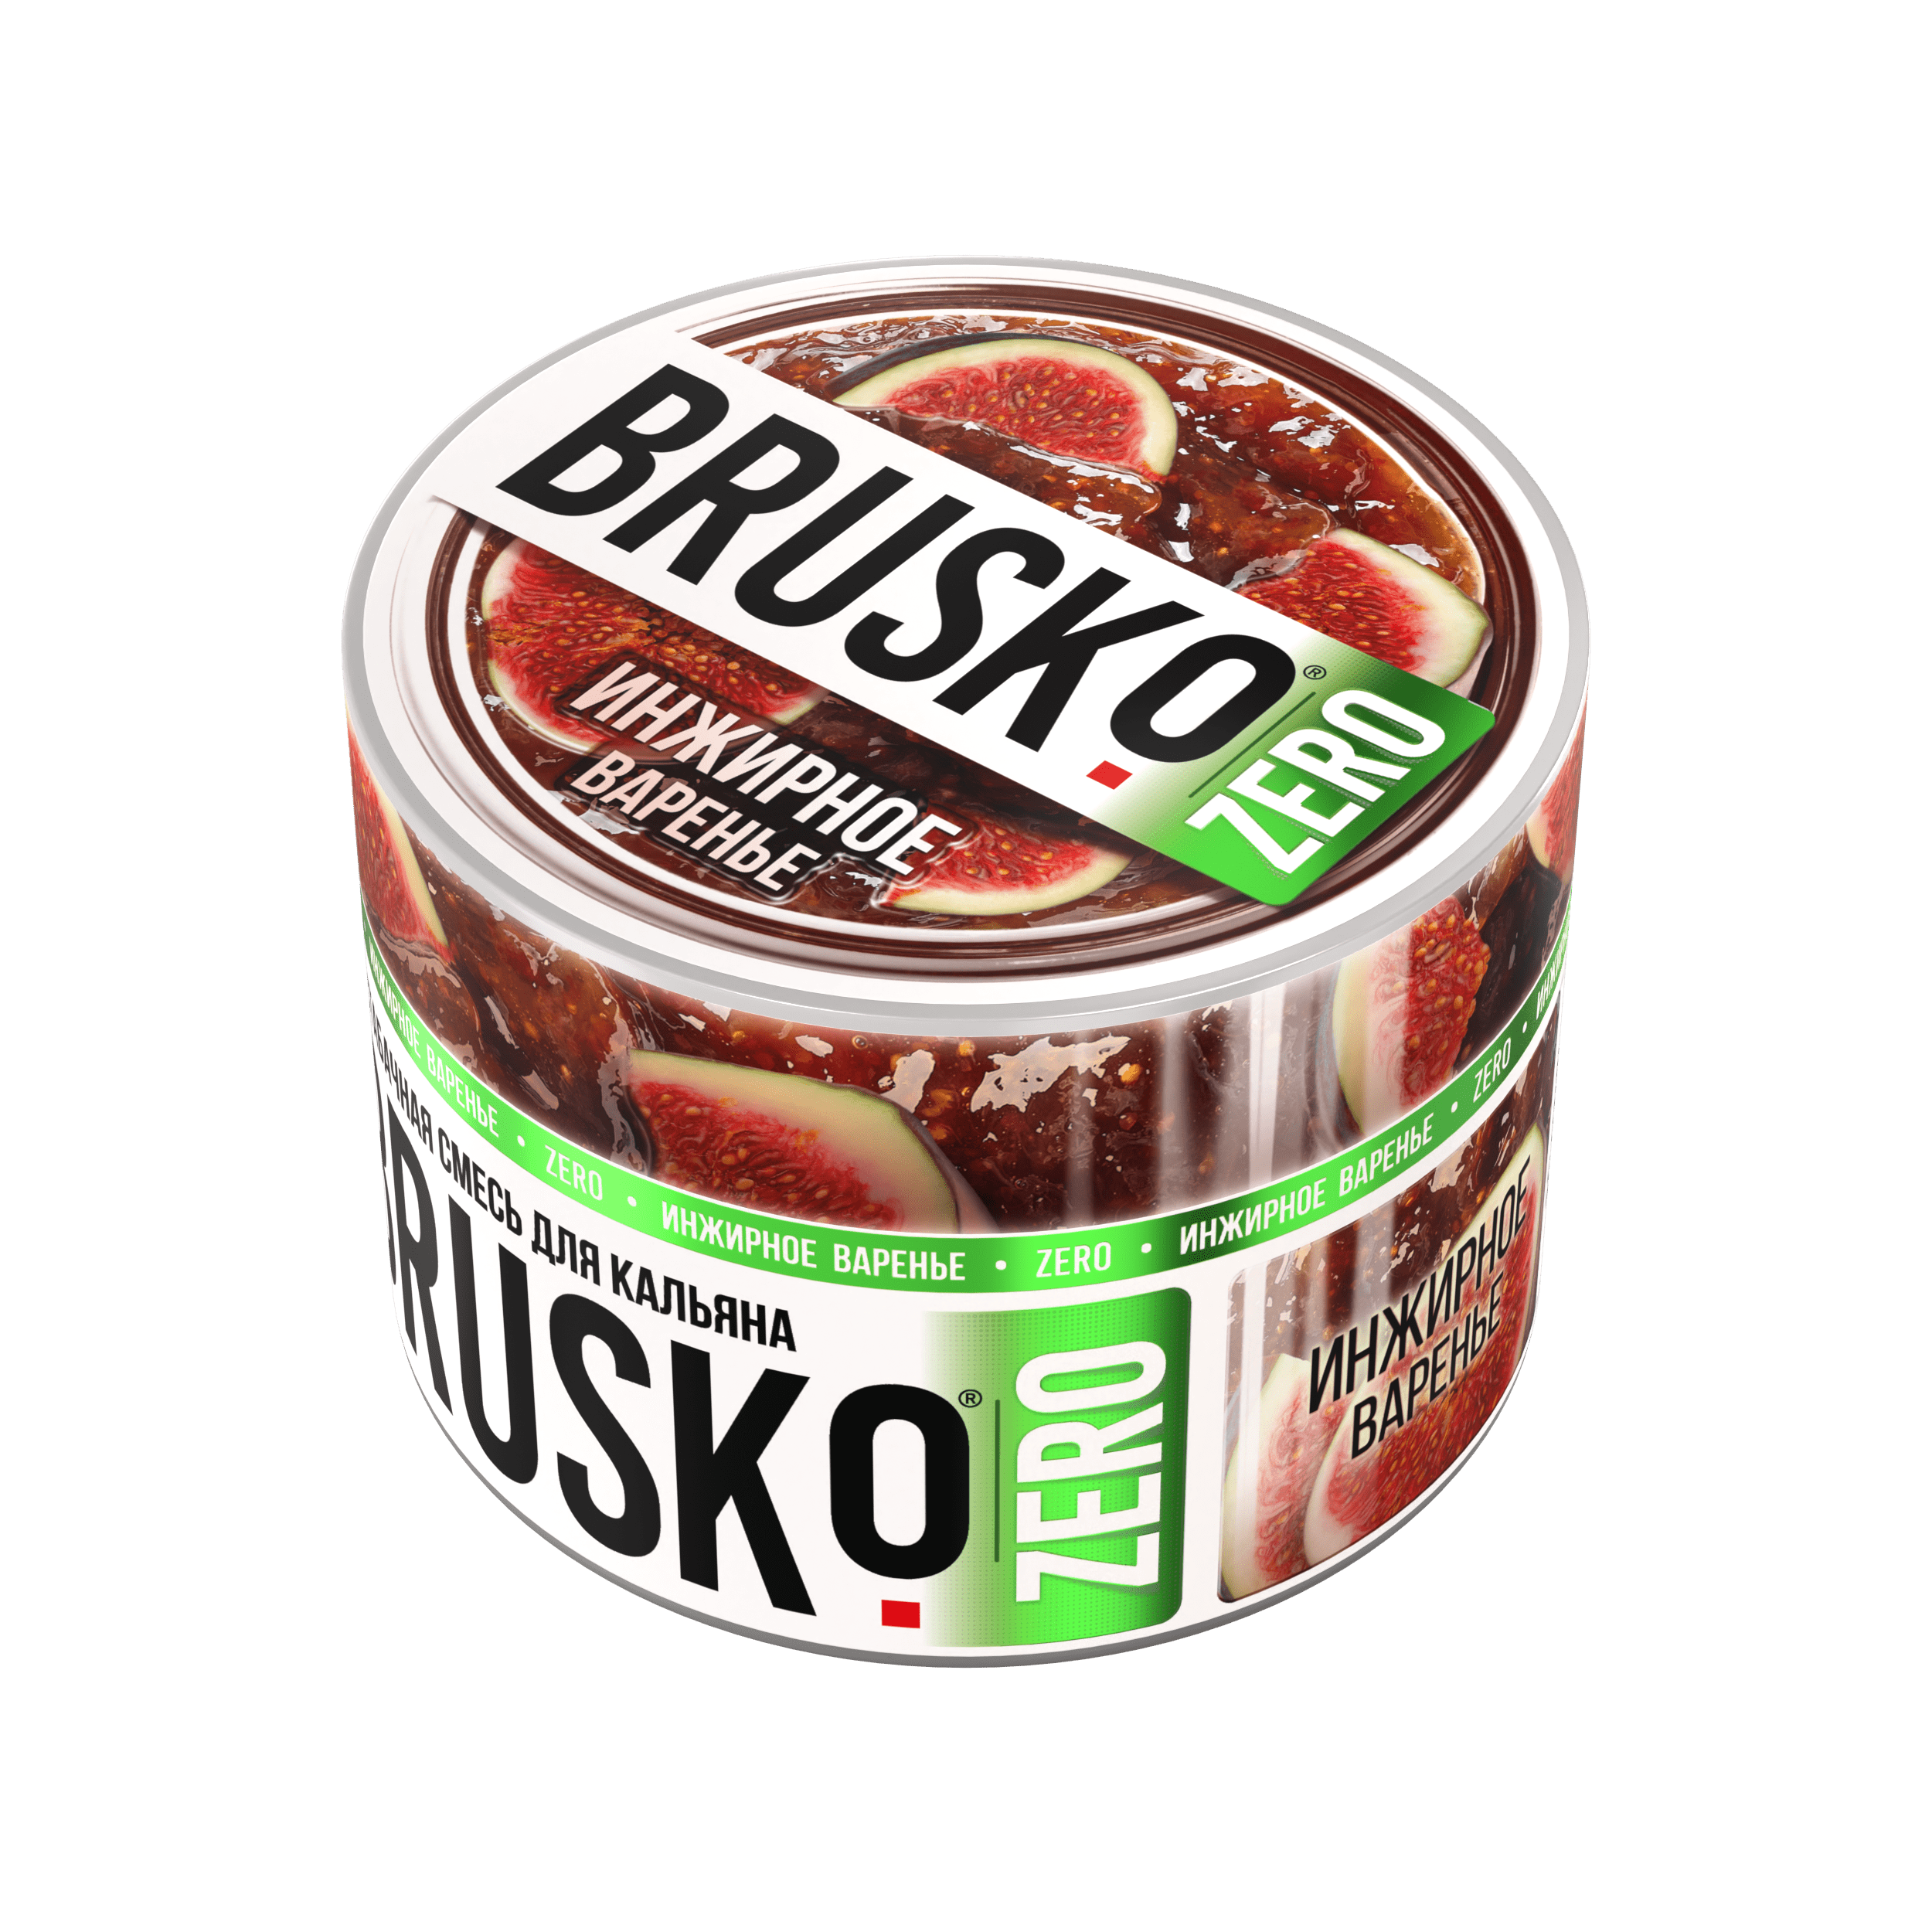 Бестабачная смесь для кальяна BRUSKO, 50 г, Инжирное варенье, Zero (М)